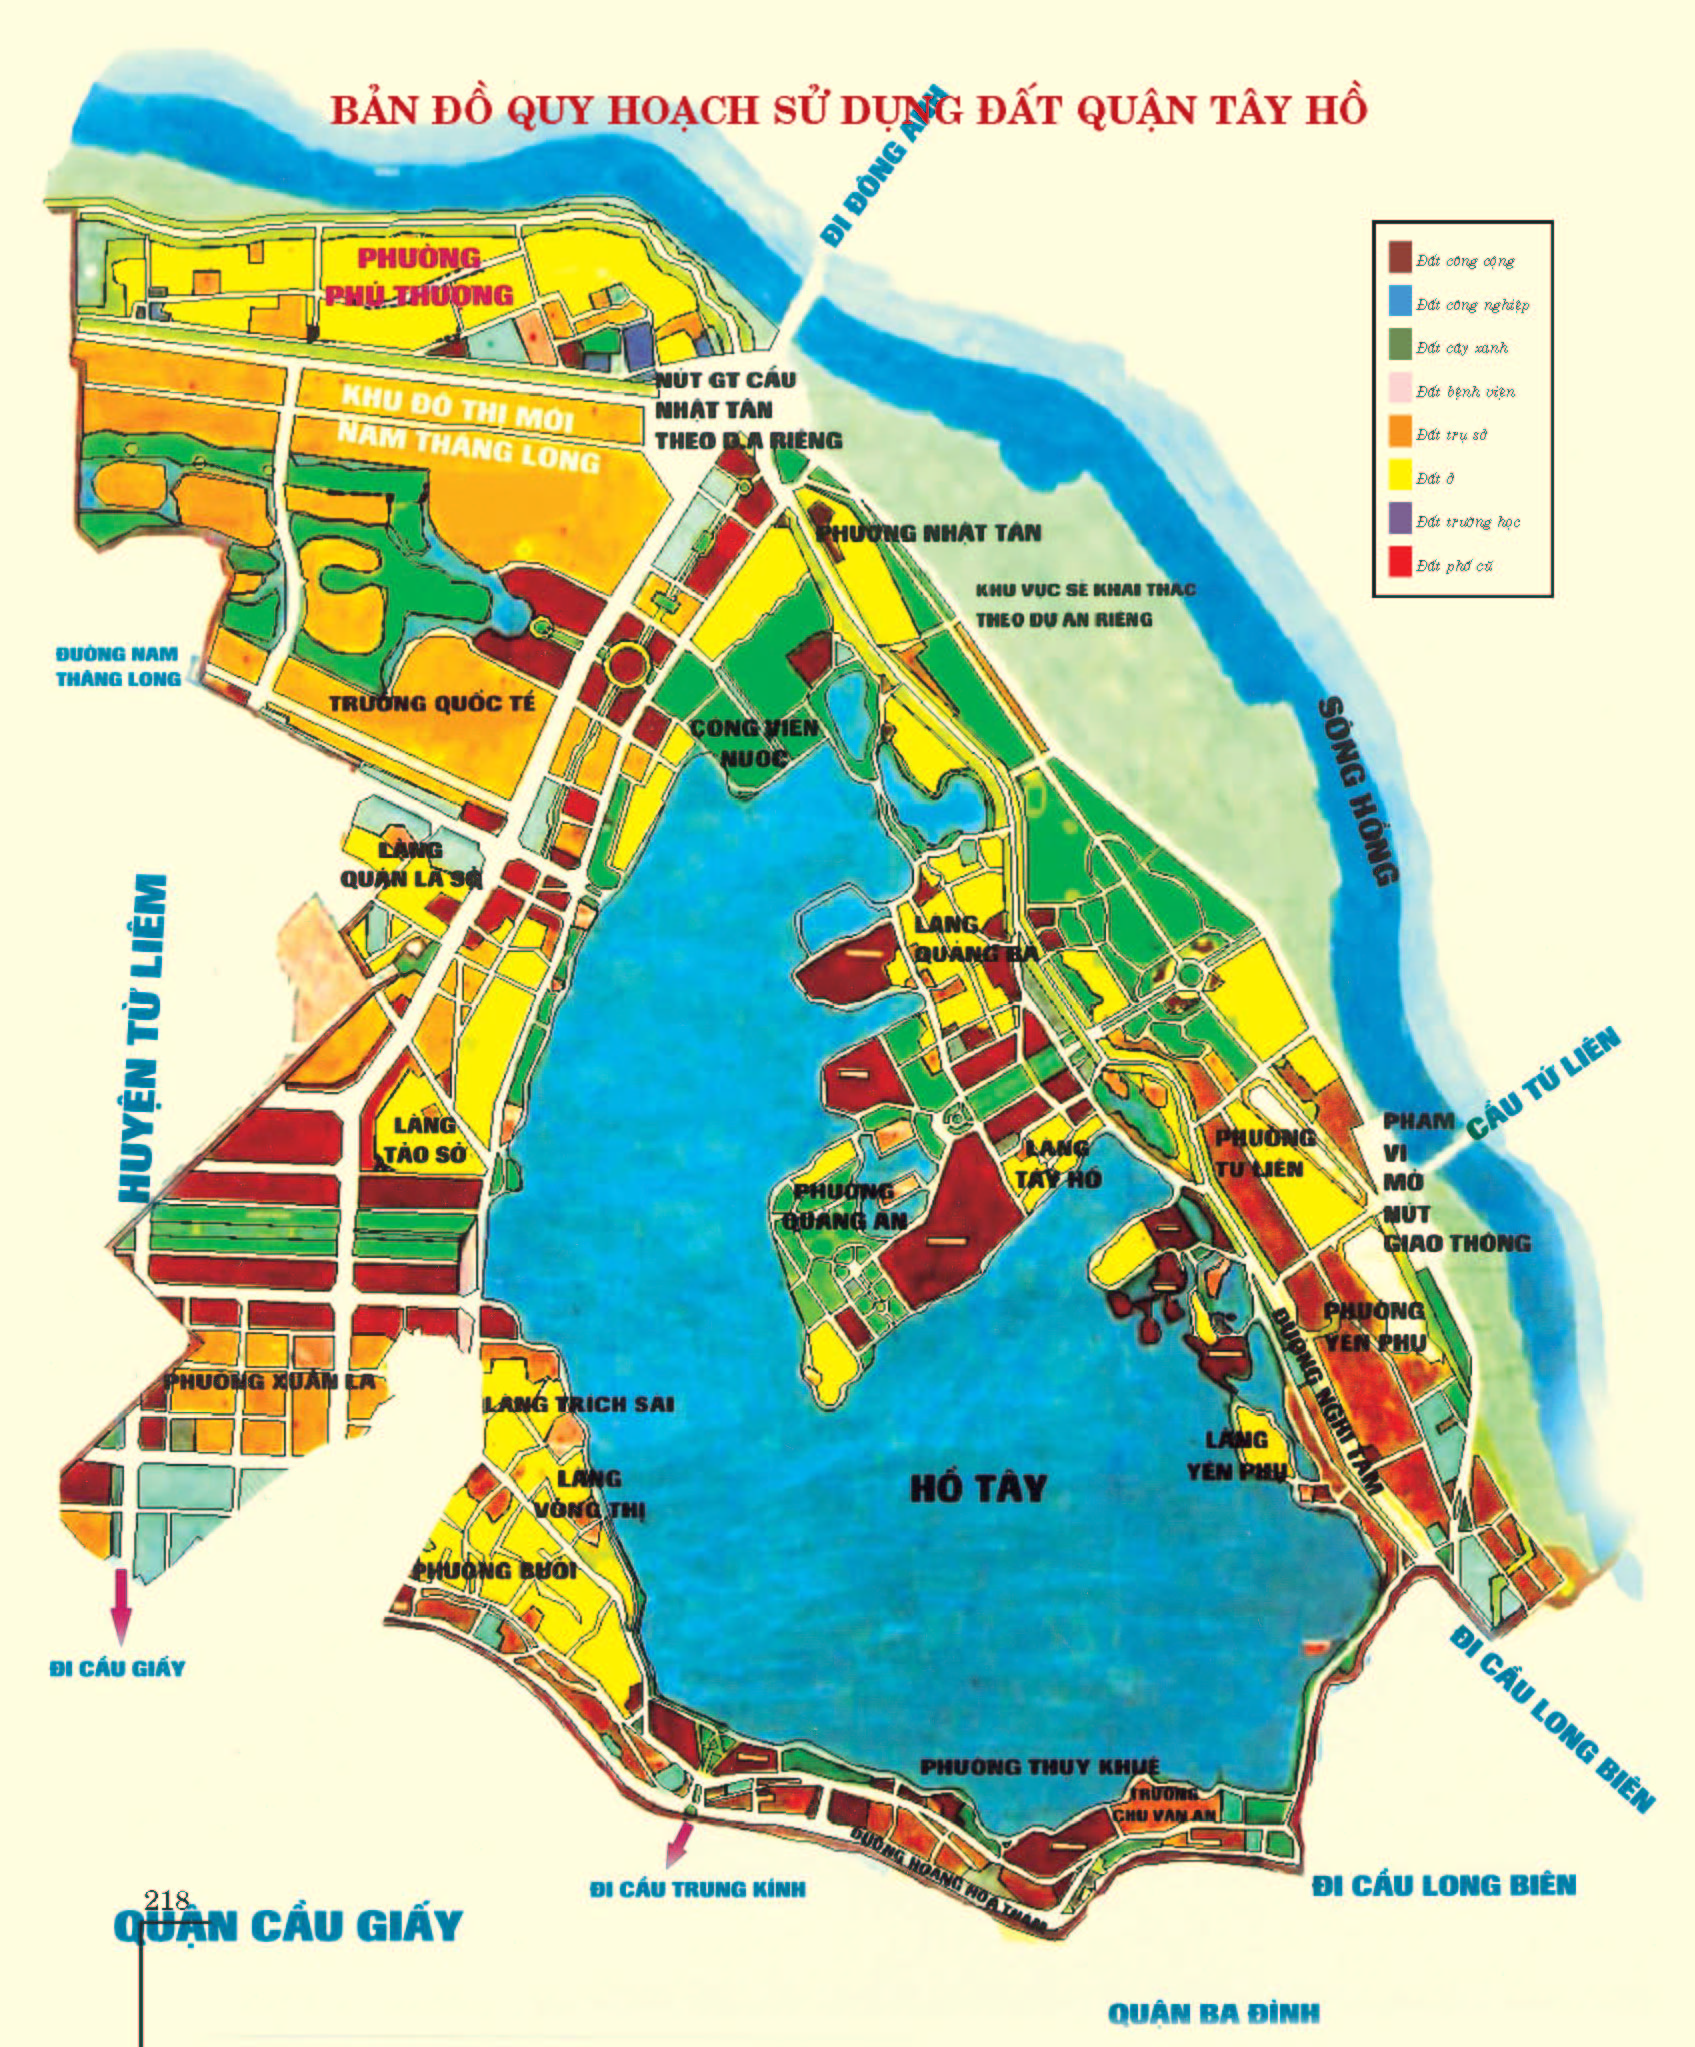 Bản đồ quy hoạch dùng khu đất tại Quận Tây Hồ 